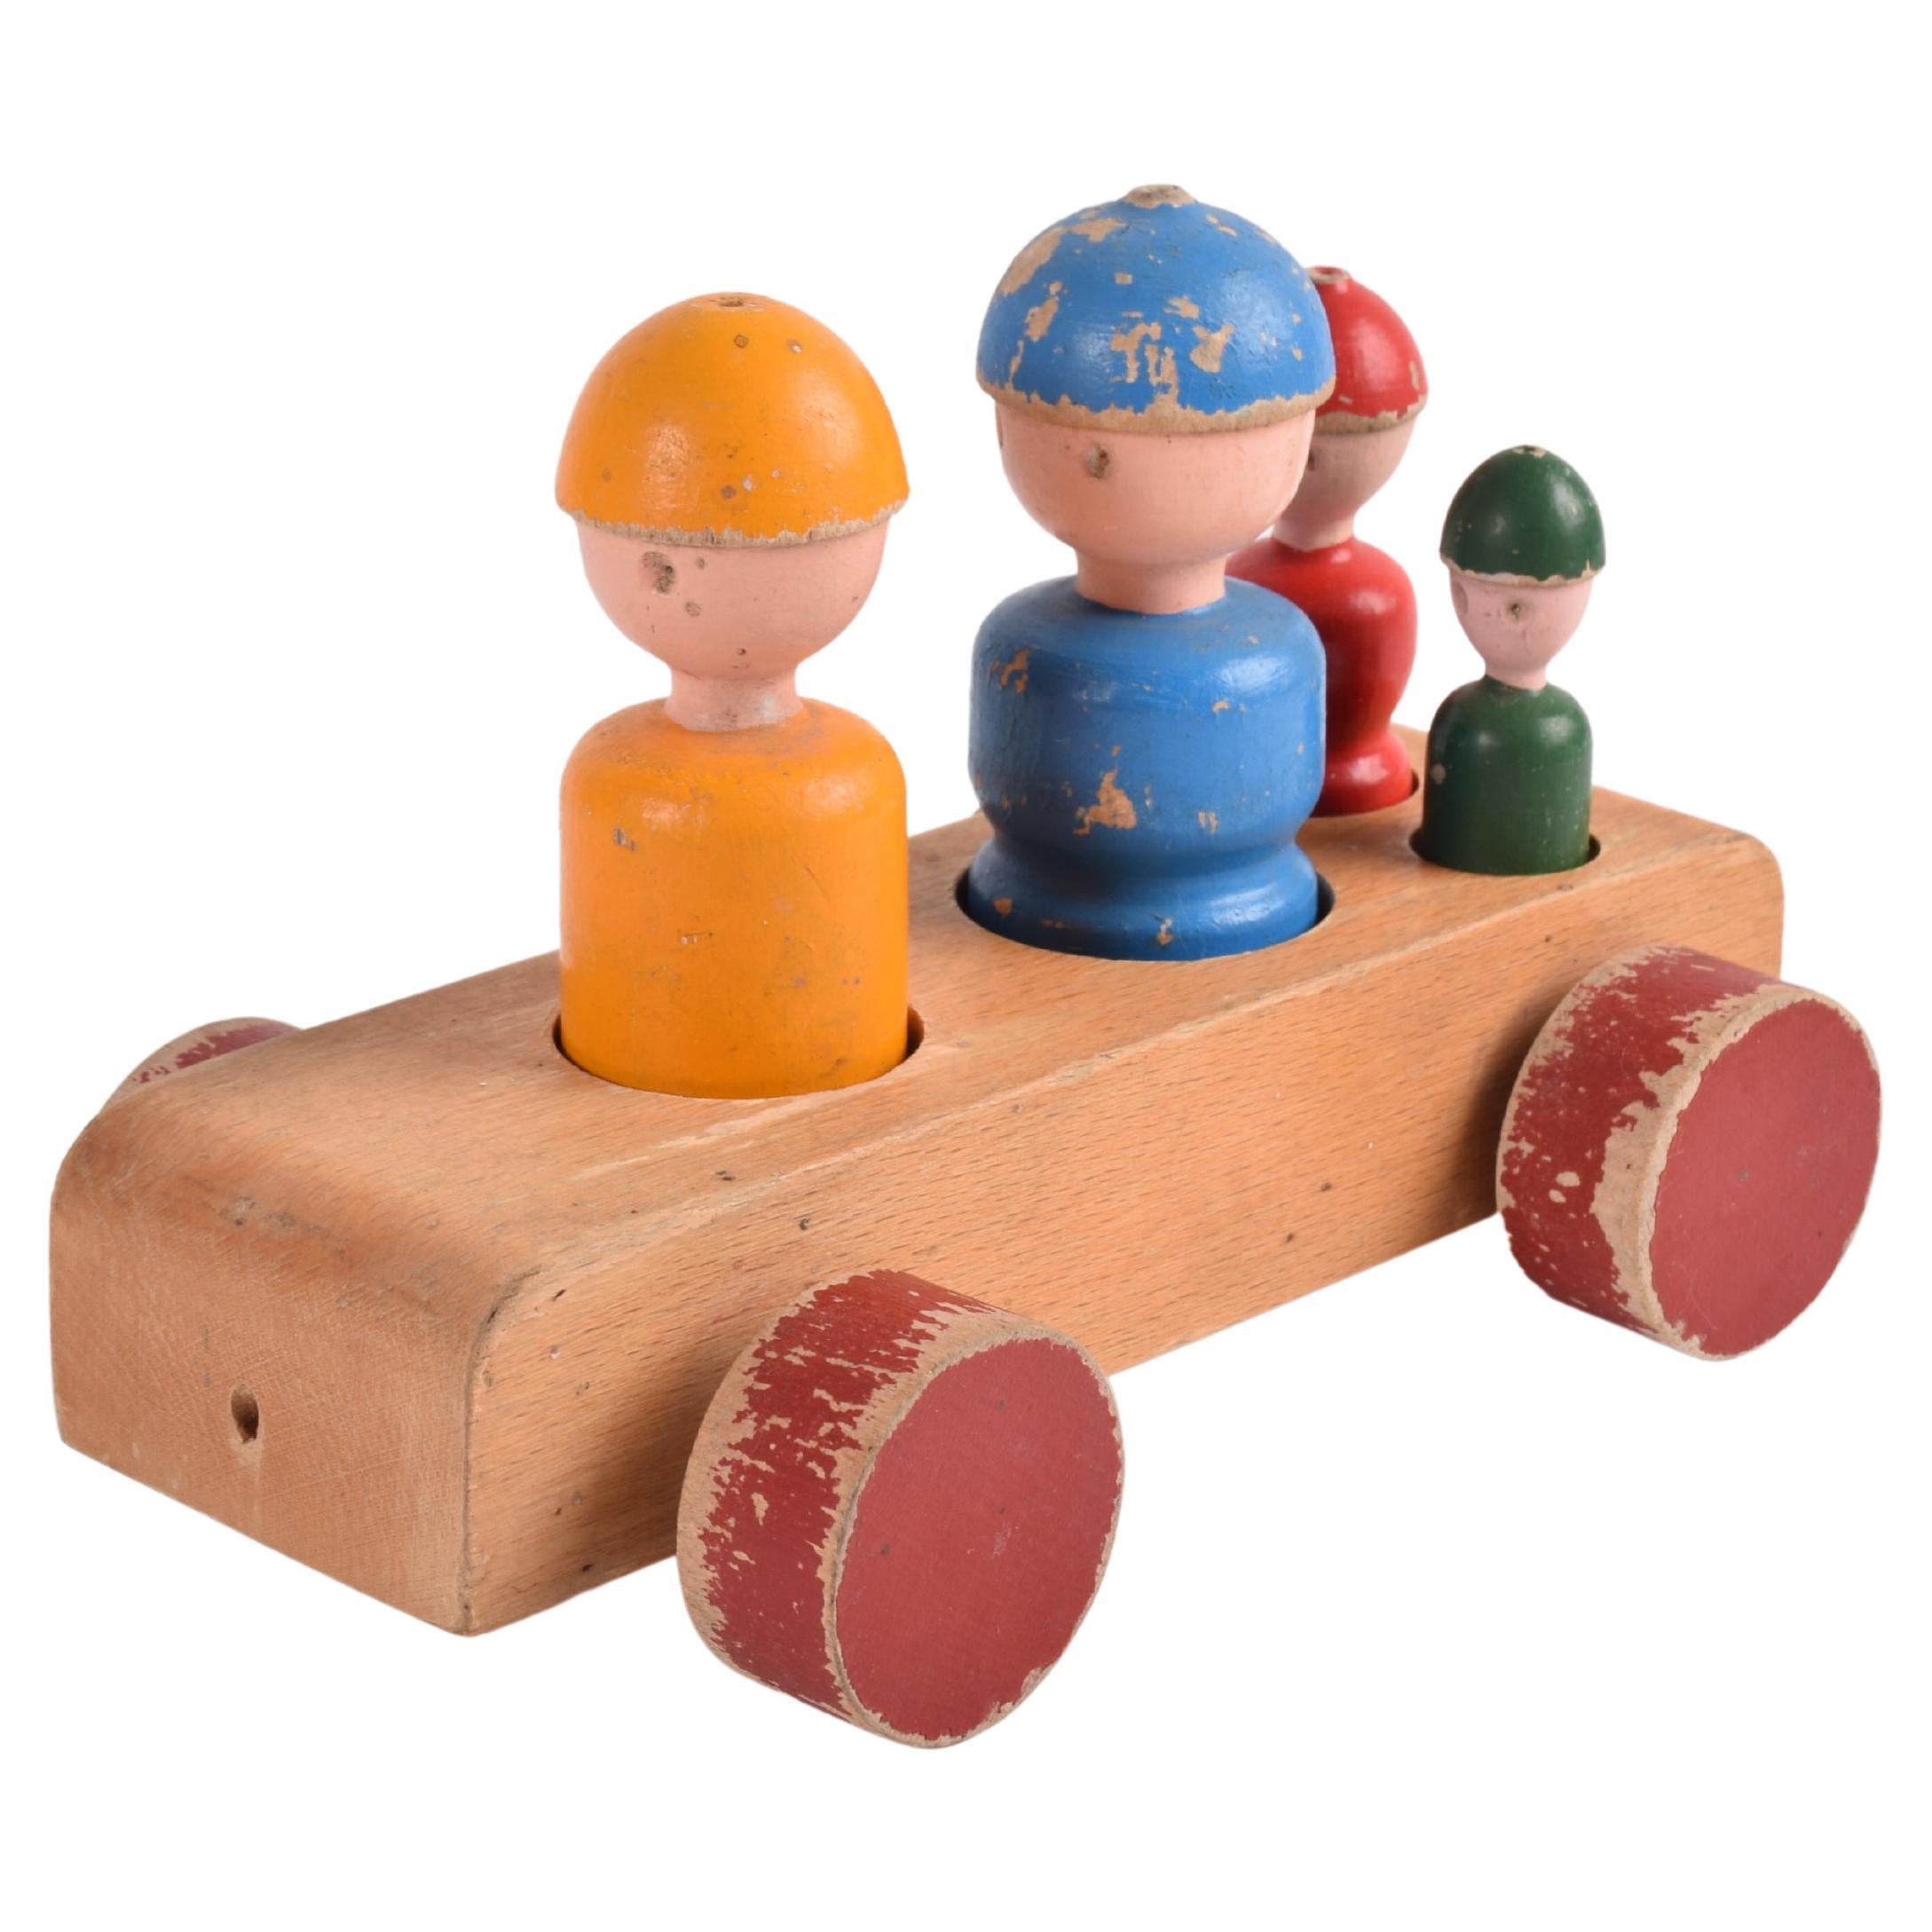 Carrozza giocattolo originale danese Kay Bojesen "Family Trip", legno di faggio colorato, anni '50